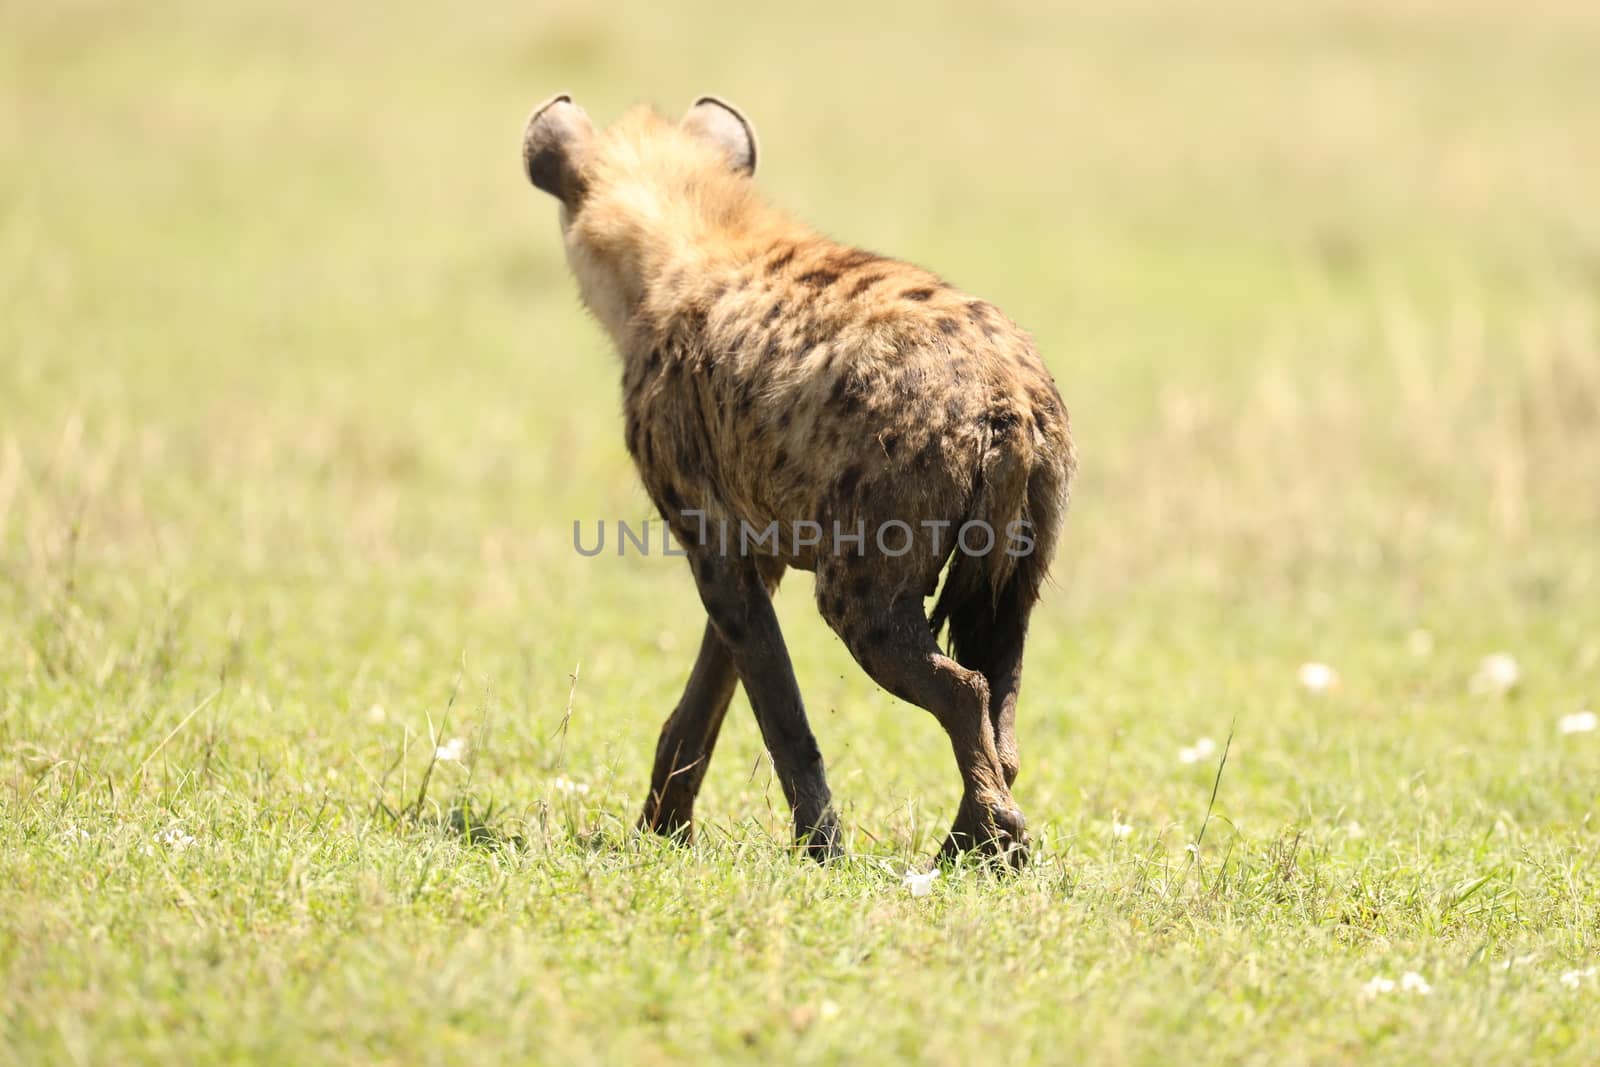 Wild Spotted Hyena by rajastills